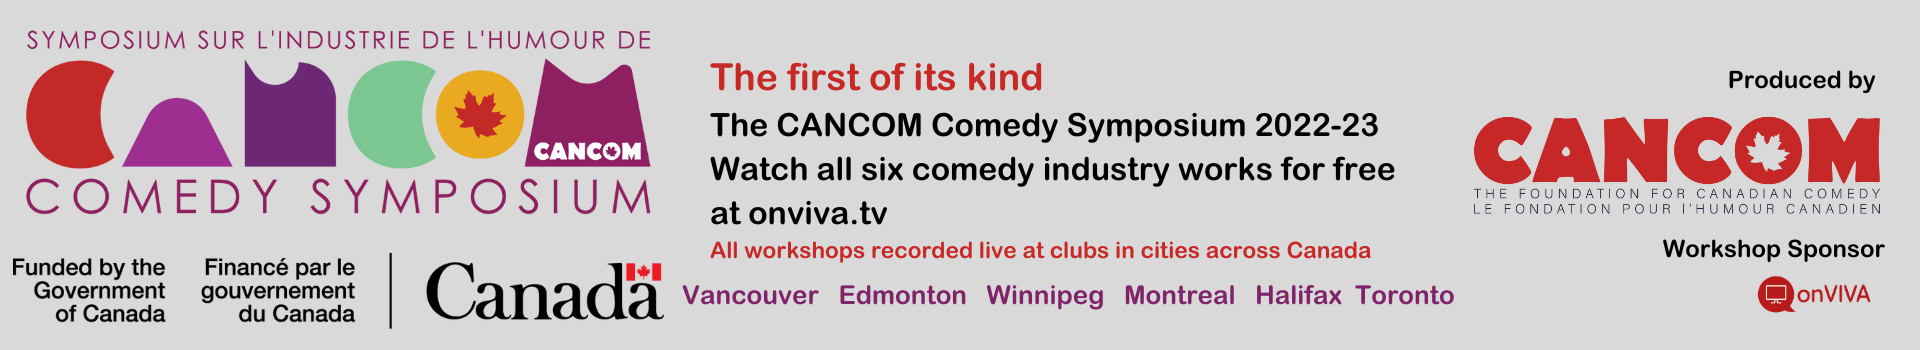 CANCOM Comedy Symposium